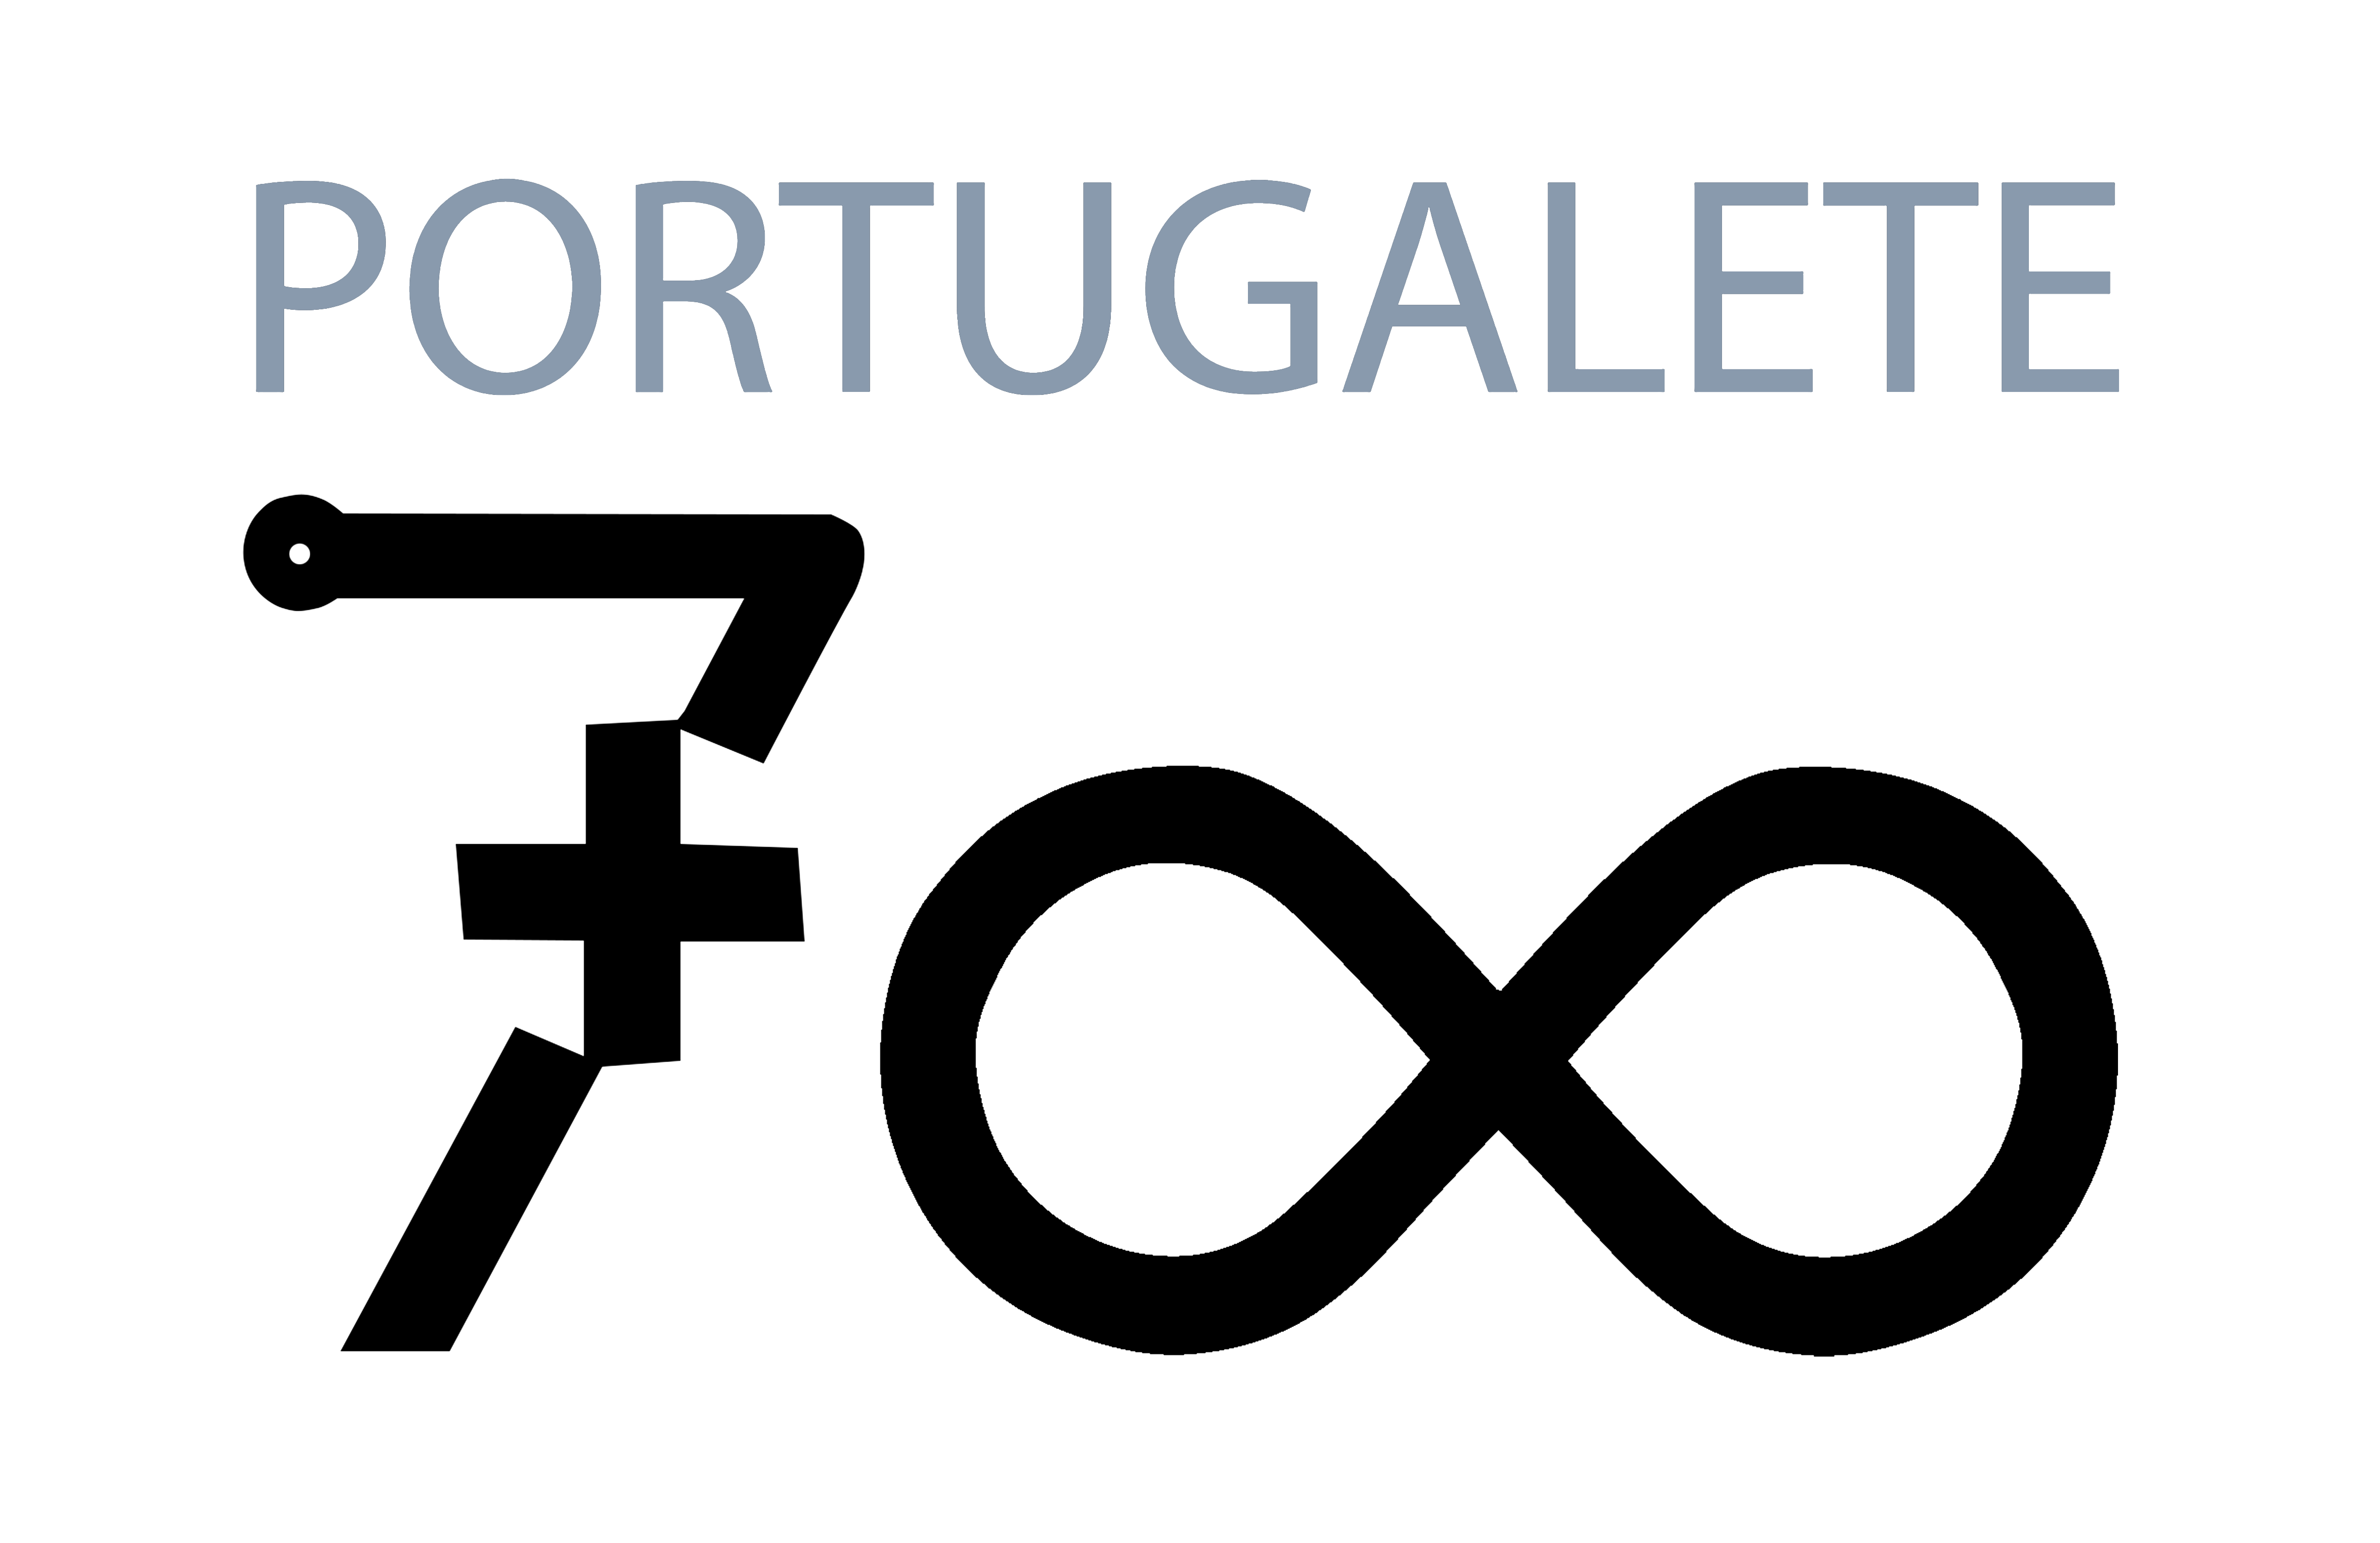 portugalete 700 aniver fondo transparente